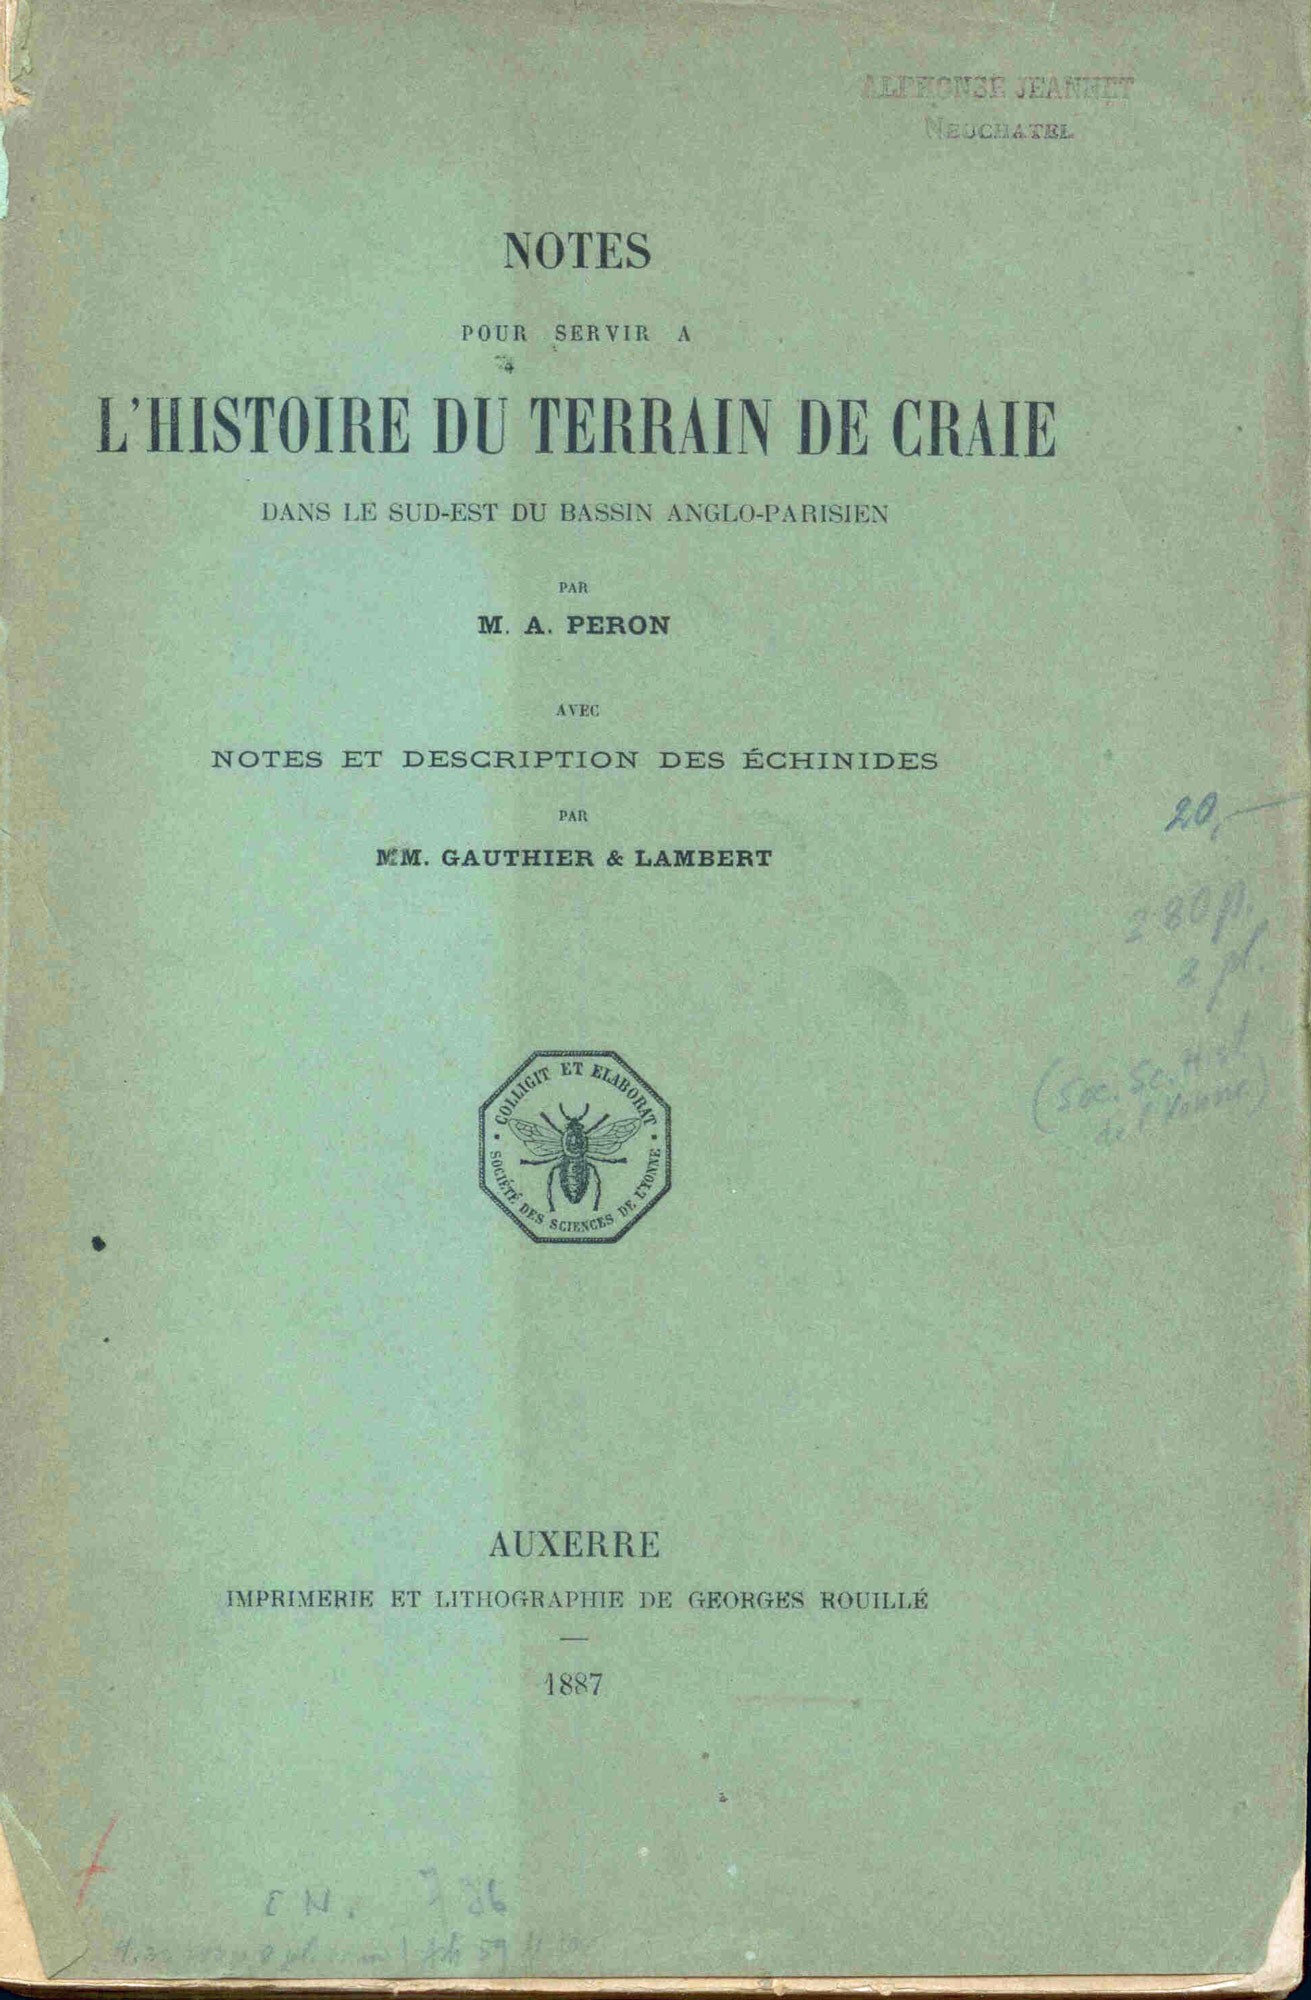 Peron, M. A. / Gauthier, M.V. / Lambert, J.: Notes pour servir a L'Histoire du Terrain de Craie dans le sud-est du Bassin Anglo-Parisien